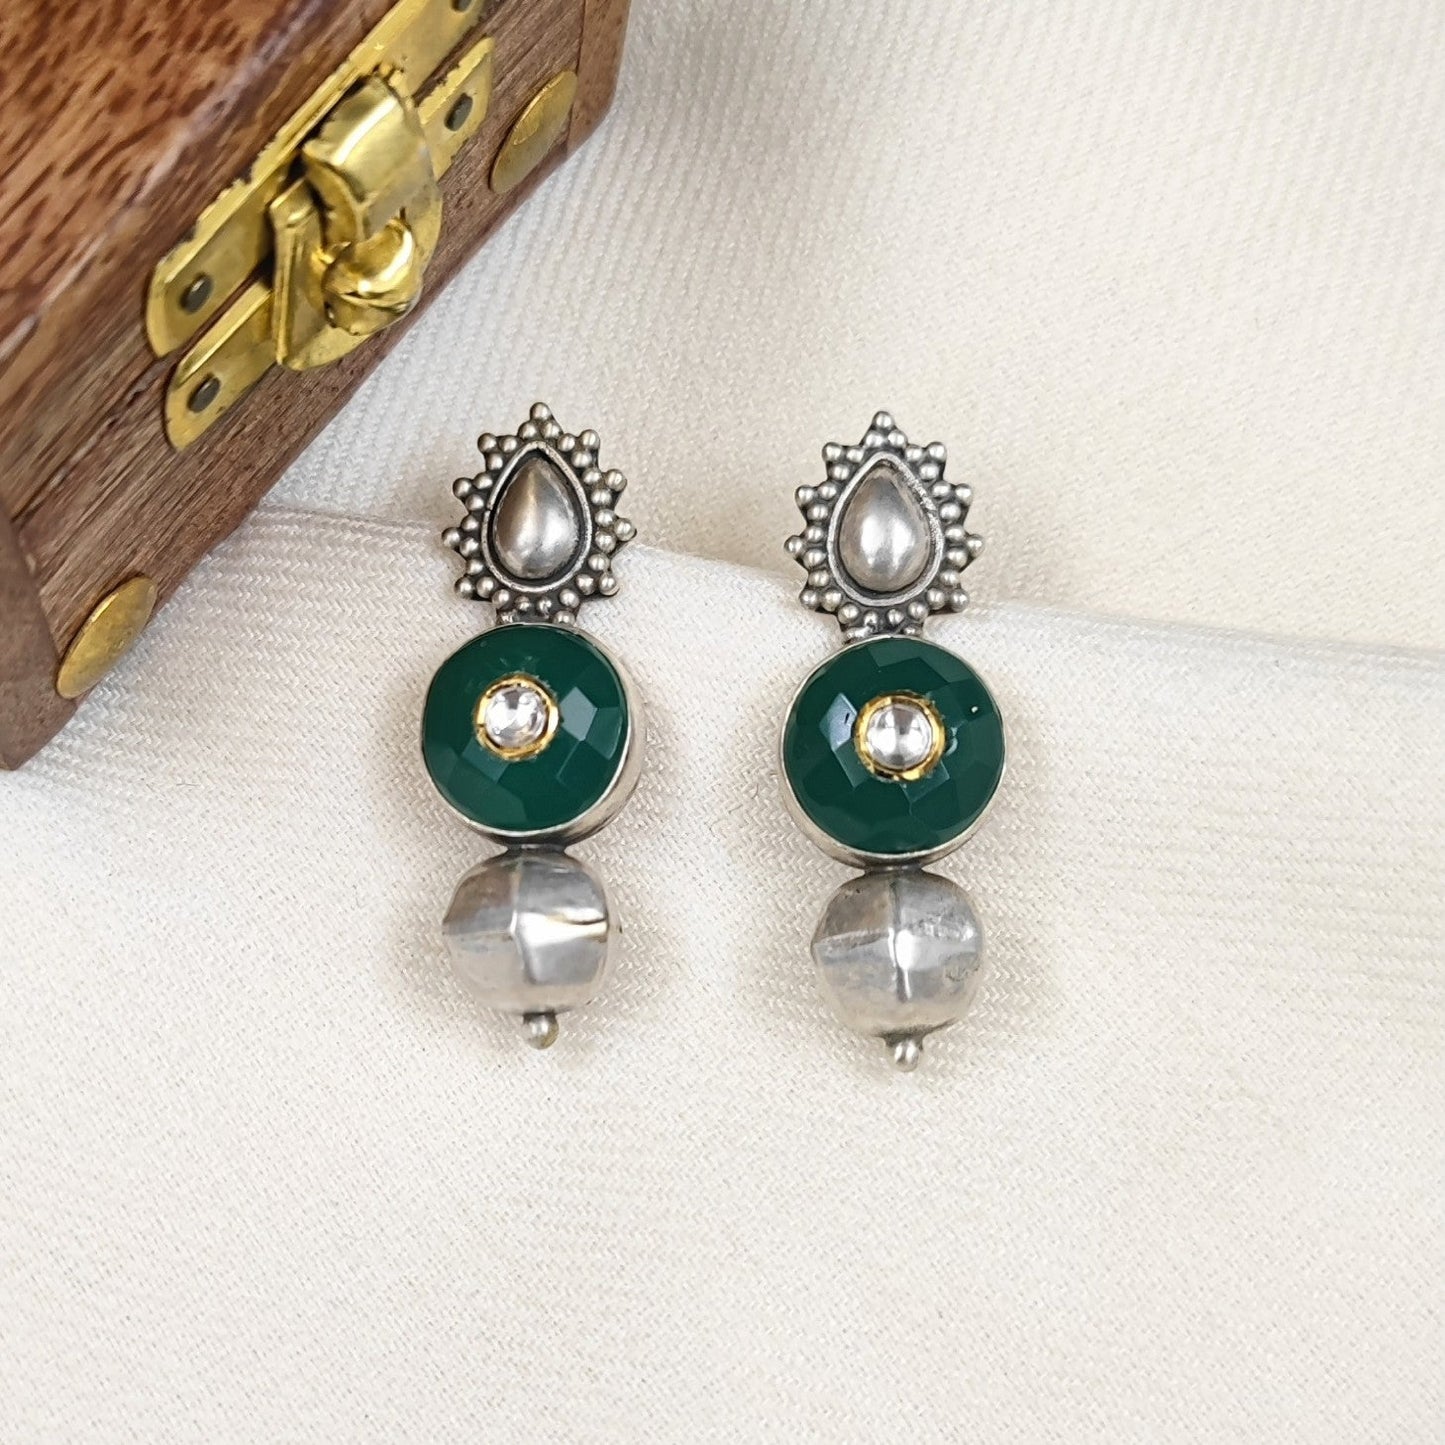 Silver Jewelry Earrings by Jauhri 92.5 Silver - Kundan Urja Earrings